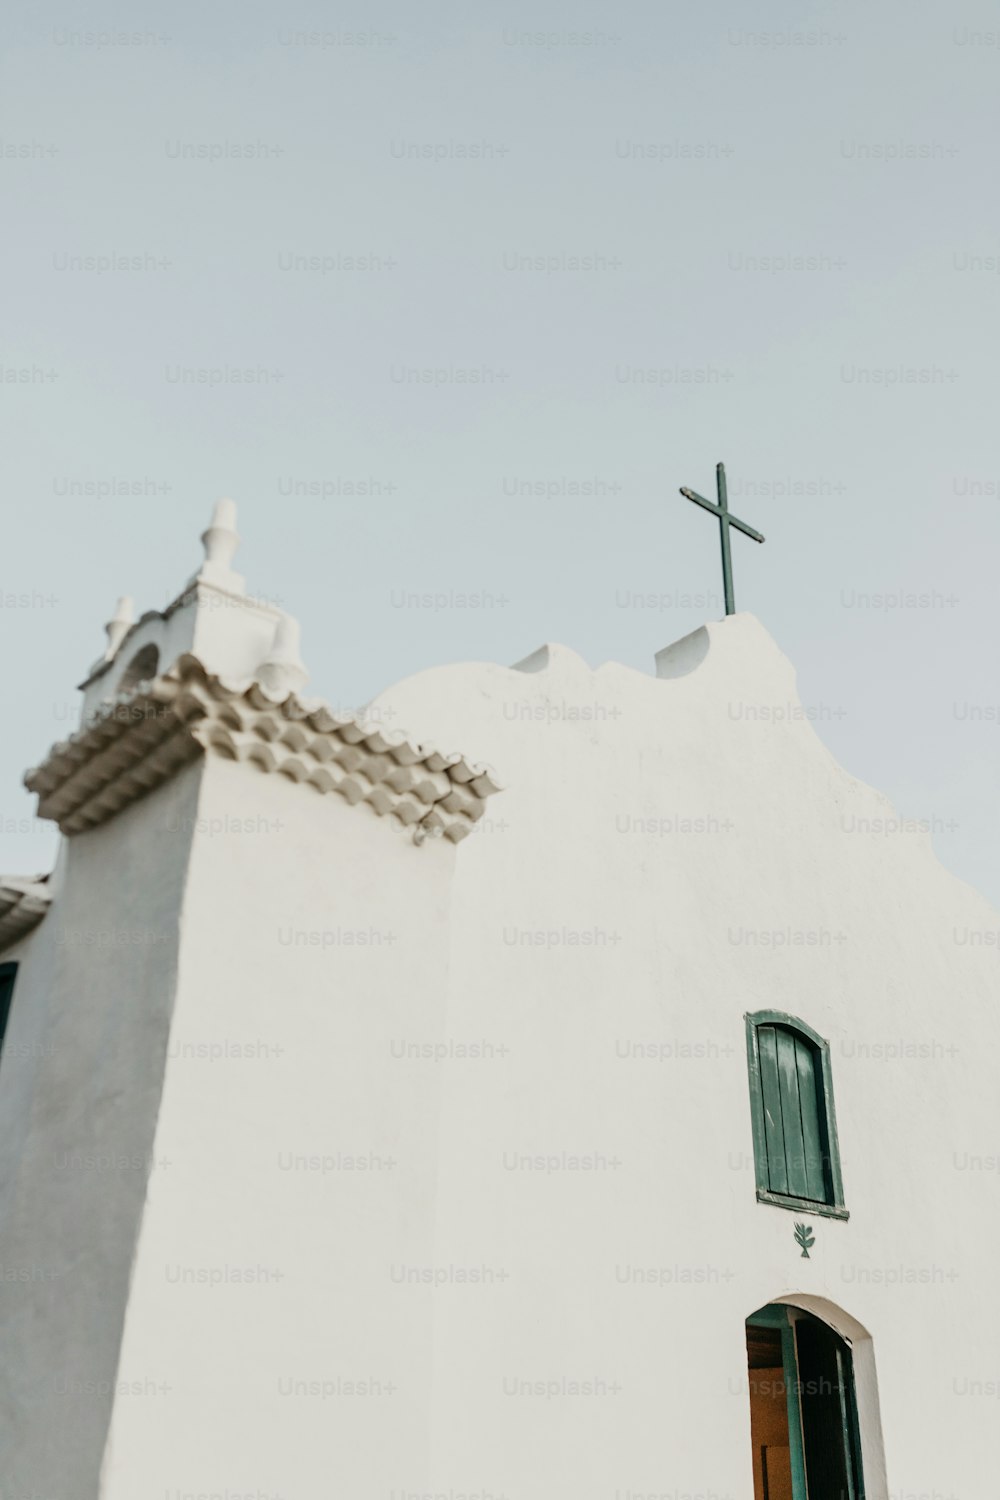 una iglesia blanca con una cruz encima